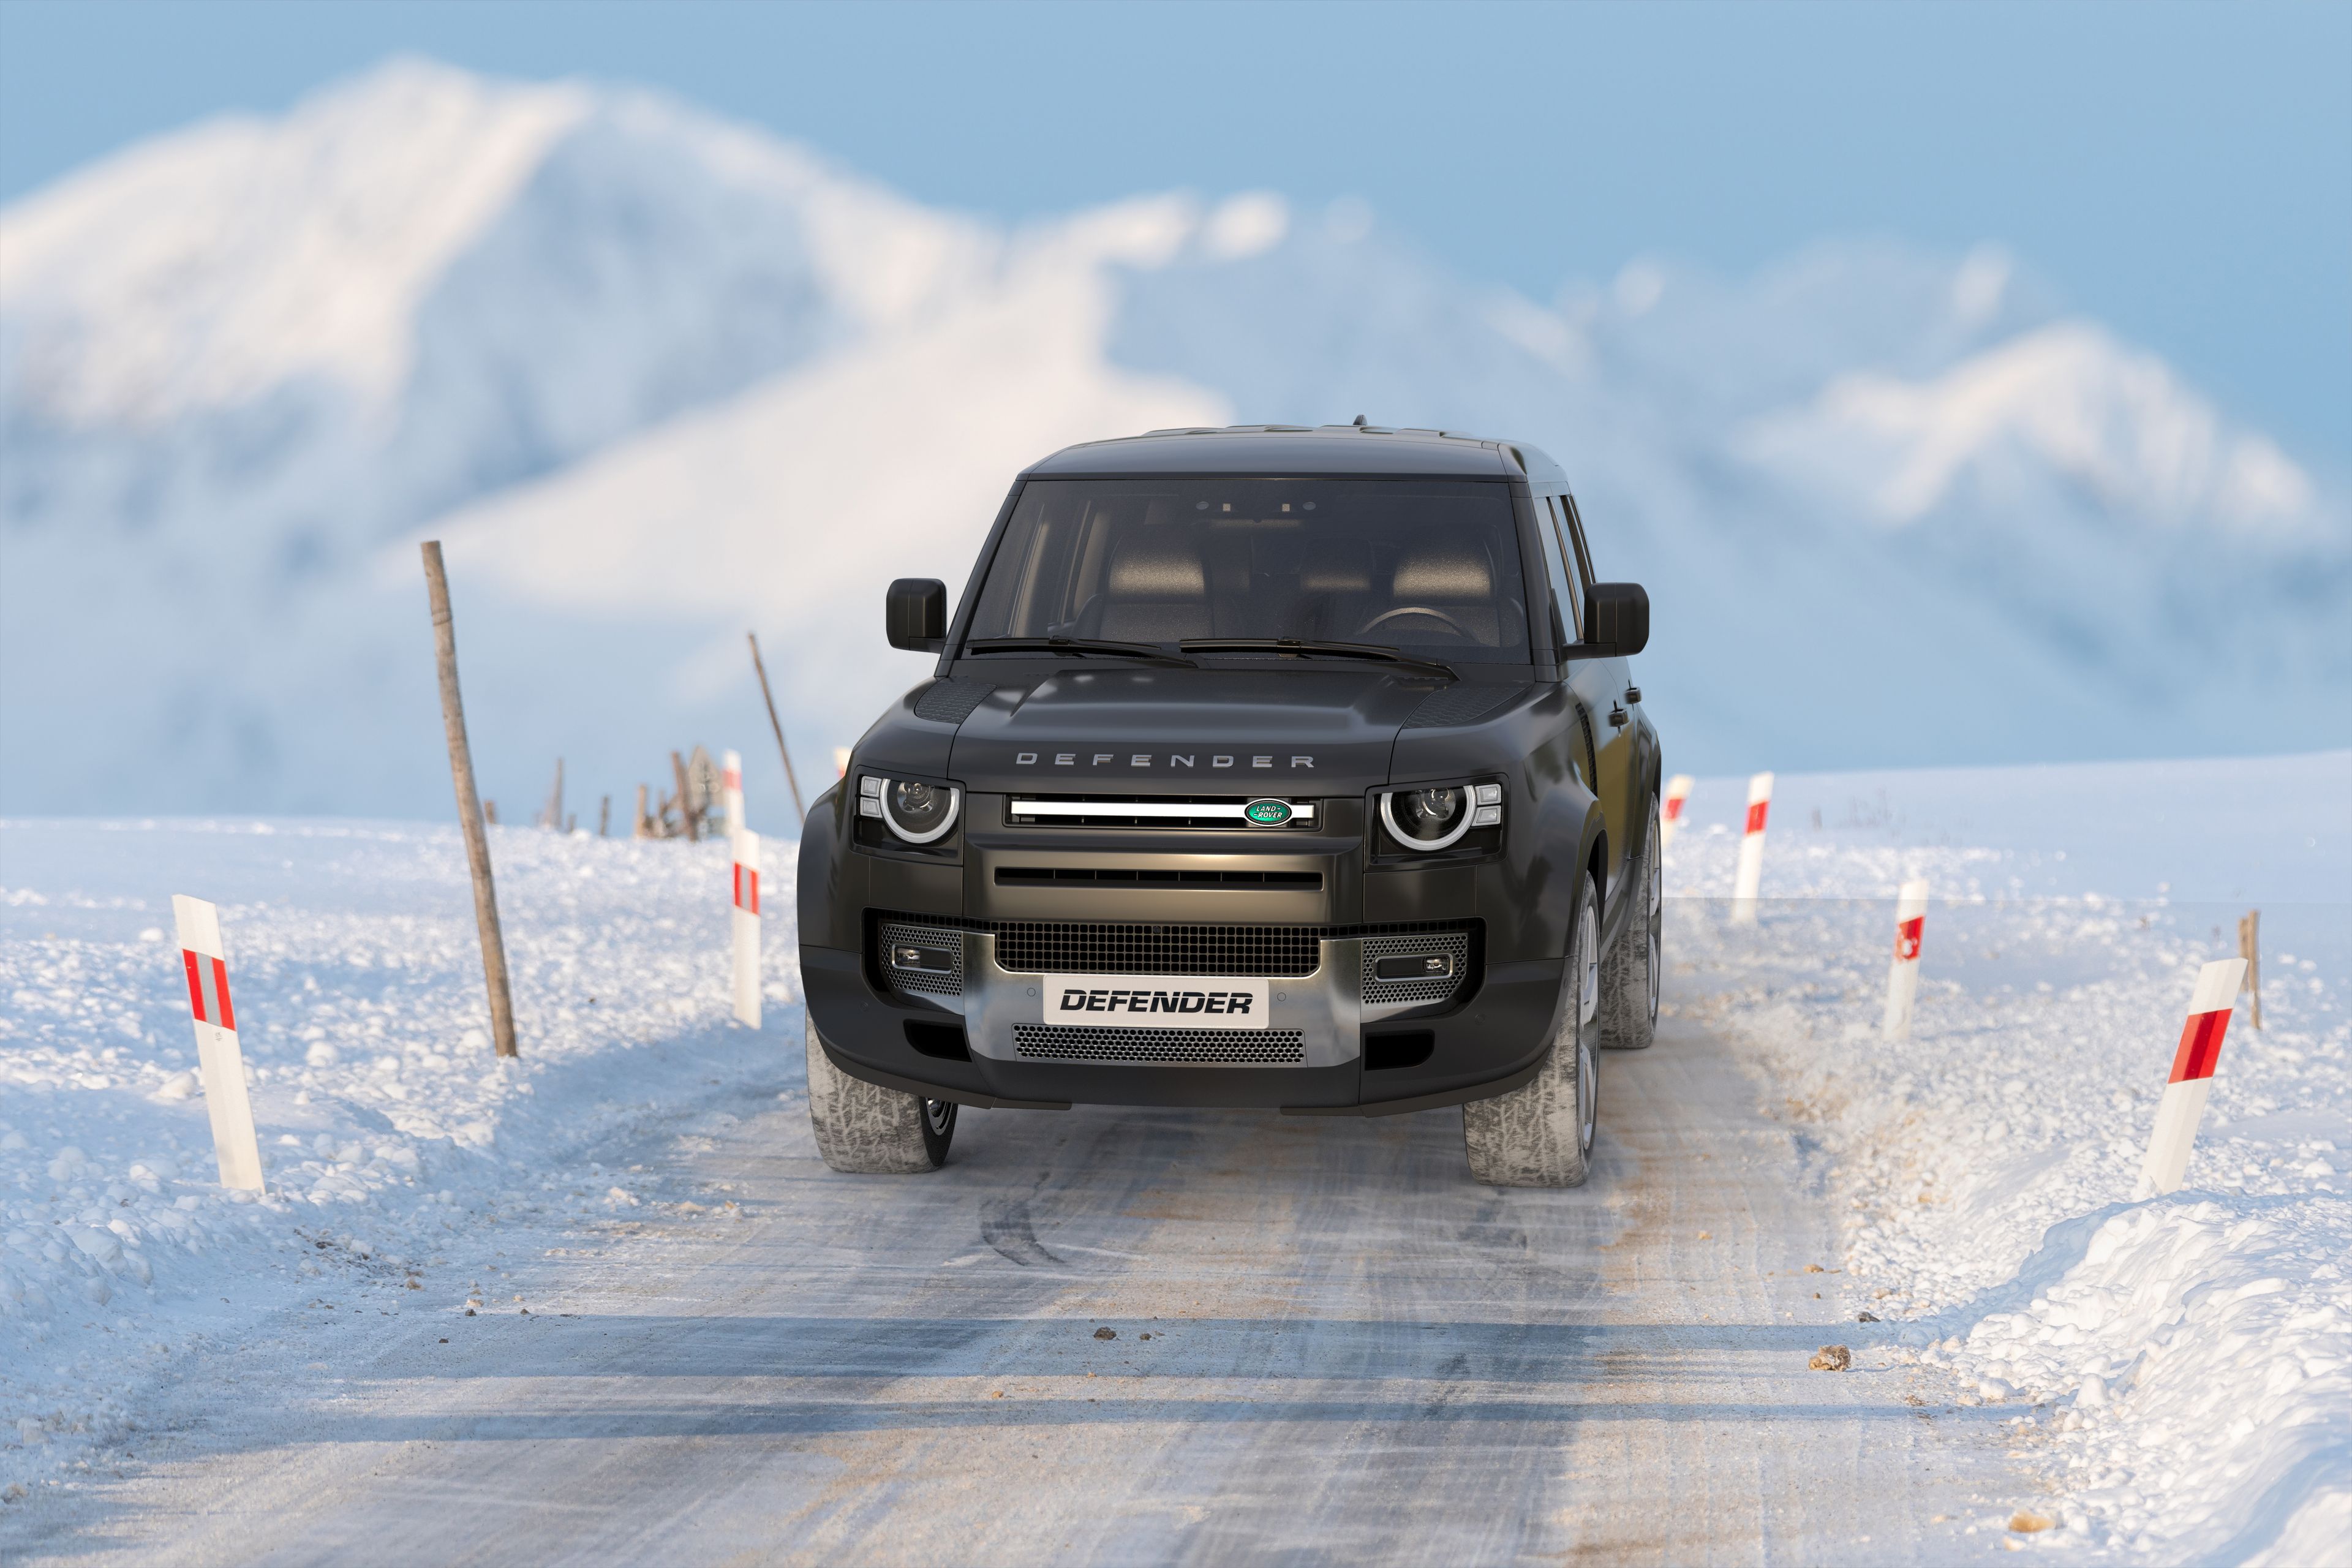 Alquiler de coche Land Rover Defender en Islandia.